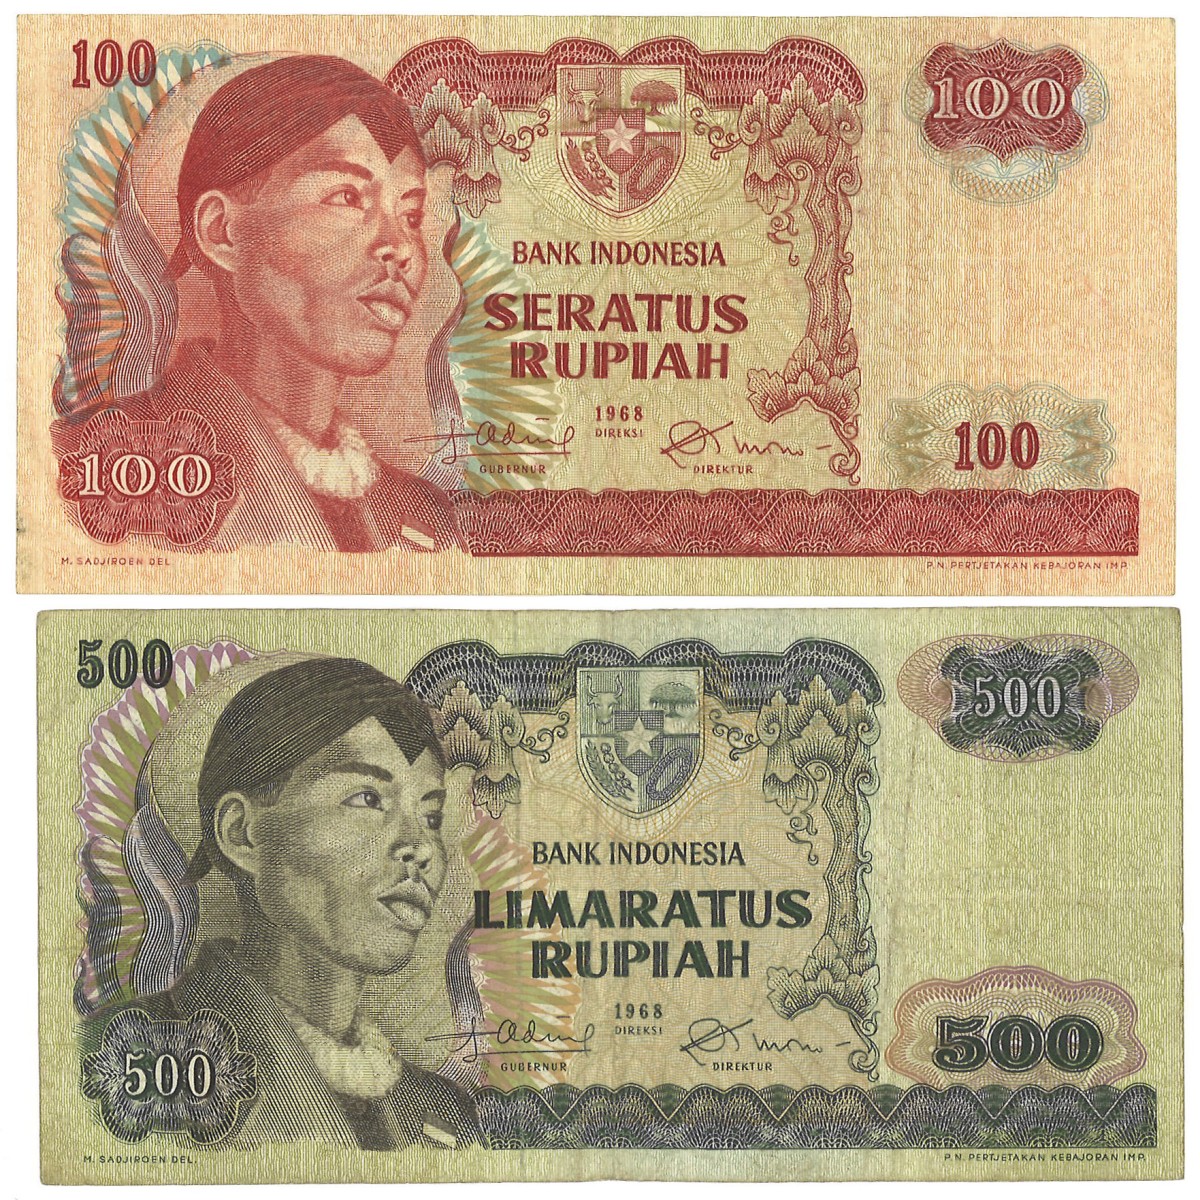 Nederland. 100/500 Gulden. Banknote. Type 1968. - Zeer Fraai.